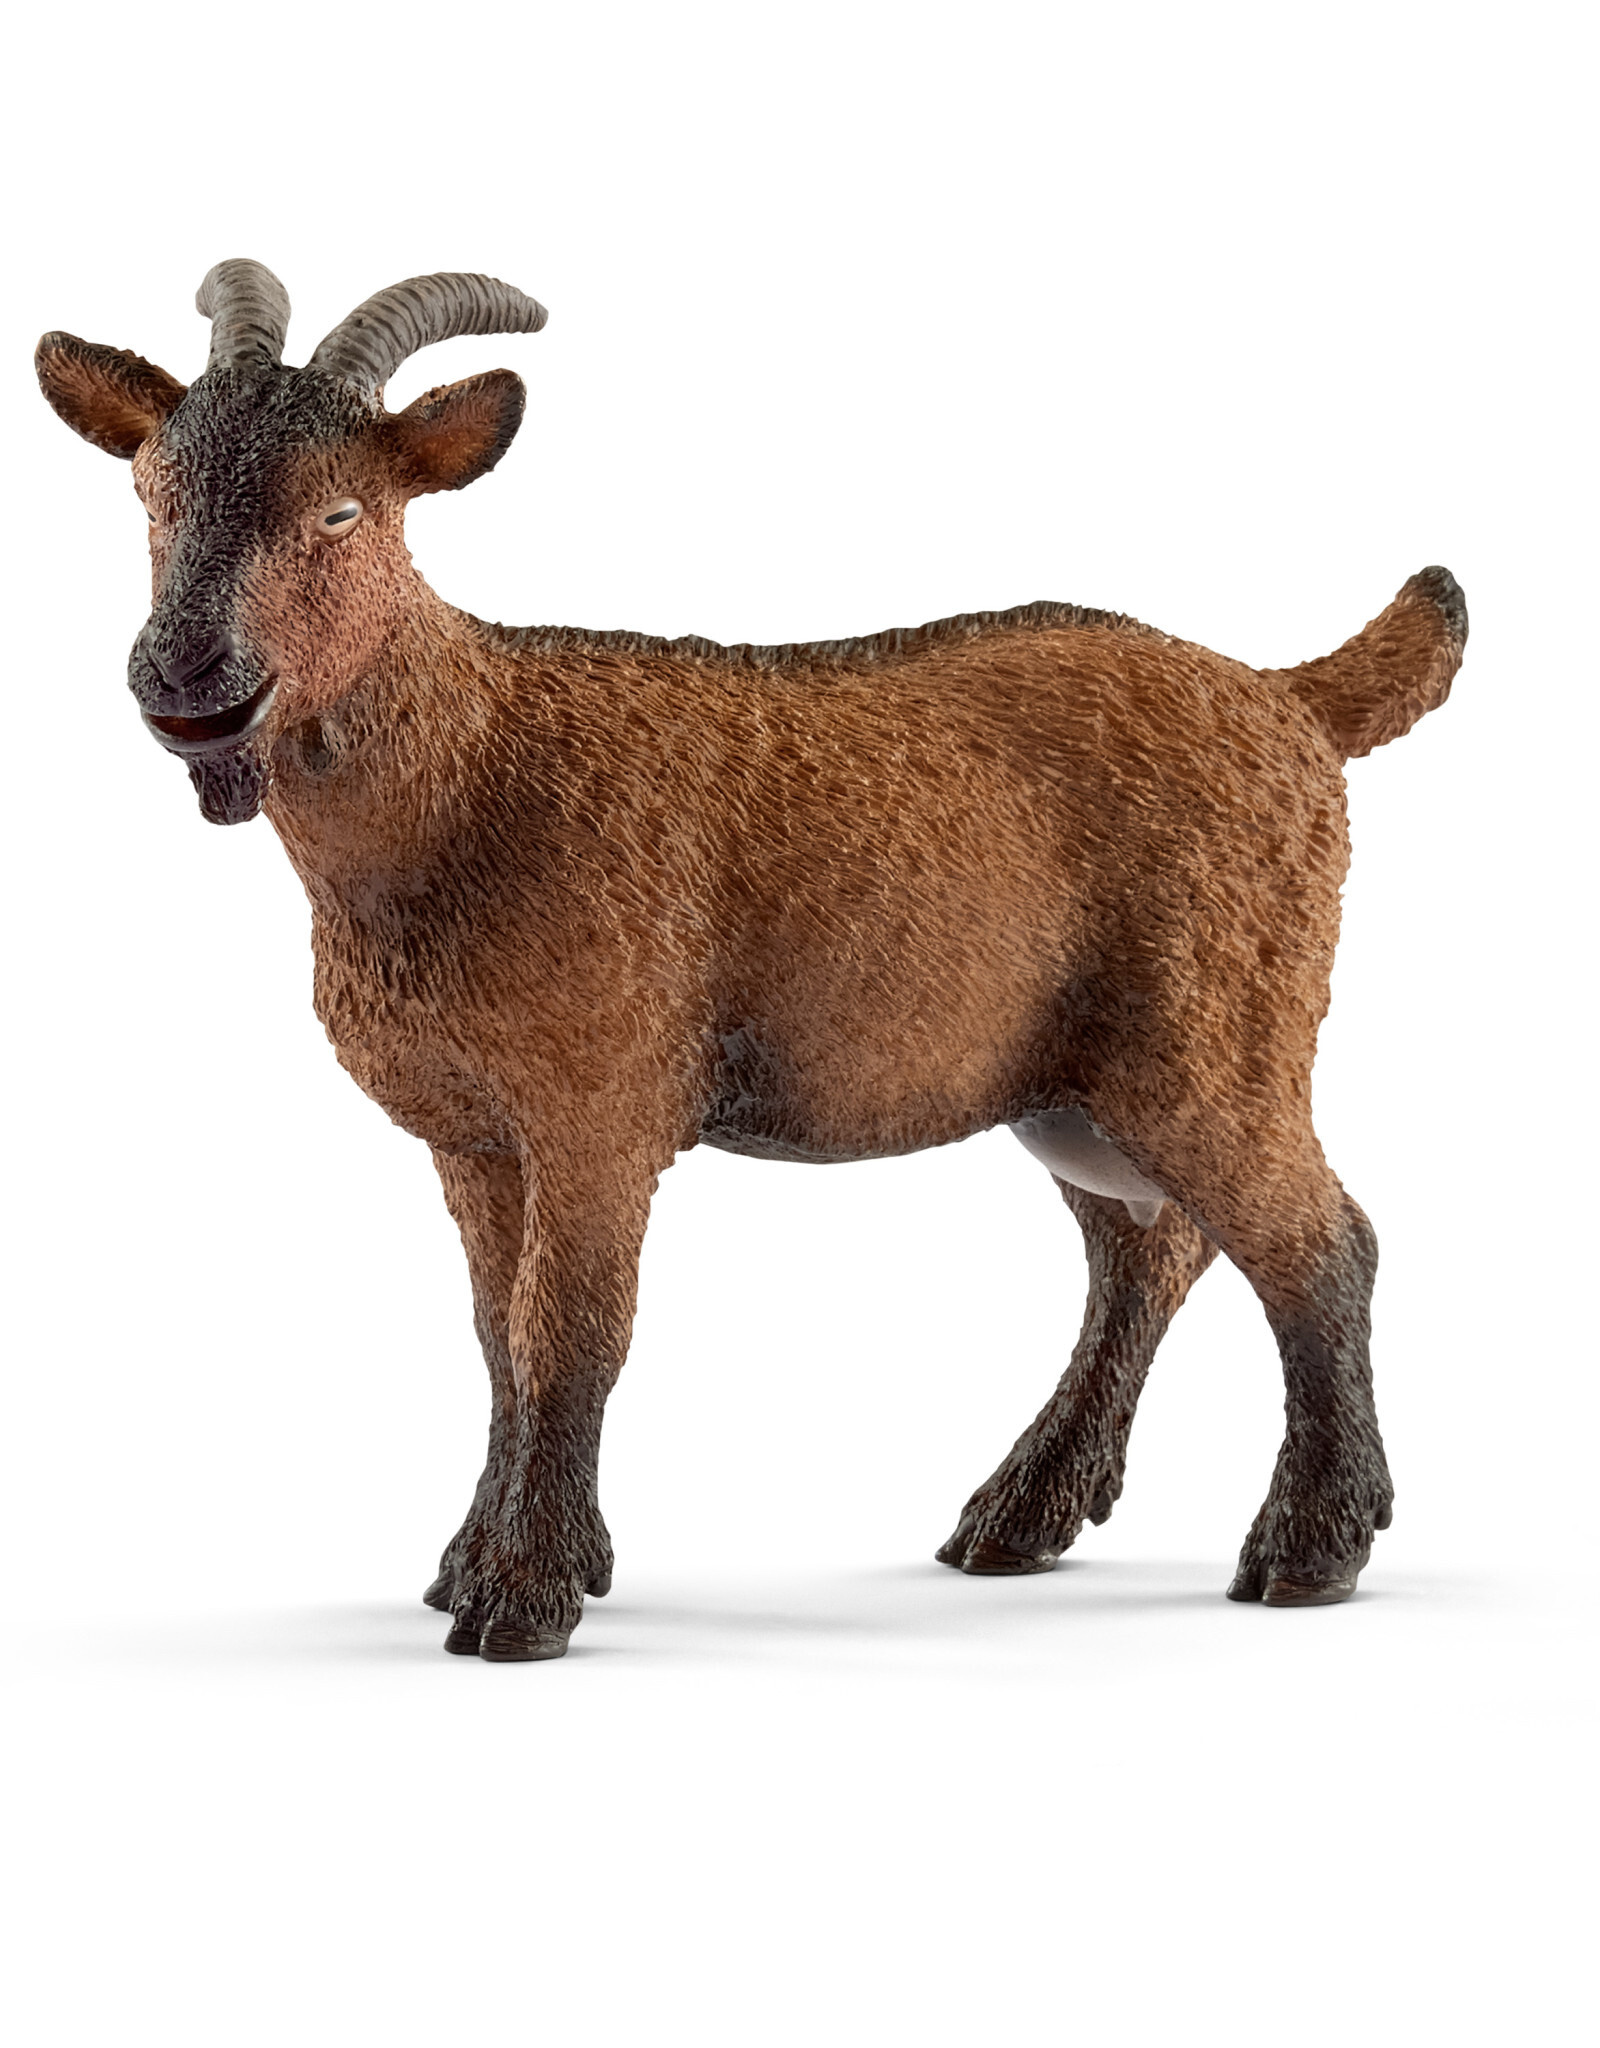 Schleich Goat 13828